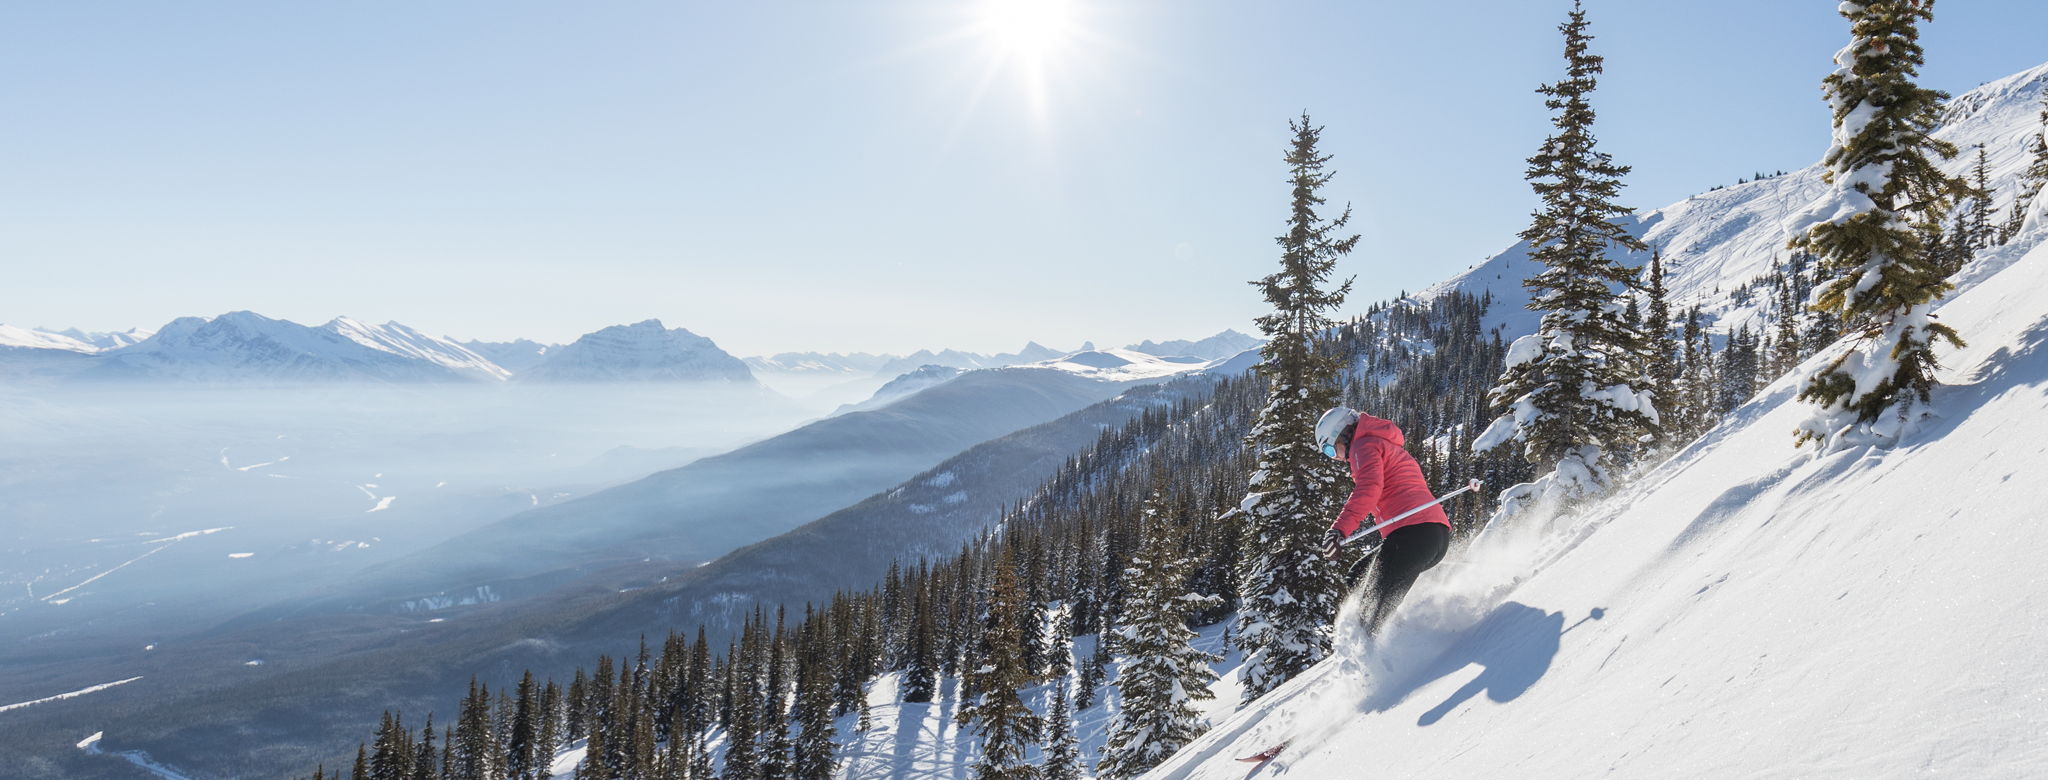 Skigebied Marmot Basin in Canada vanaf vandaag geopend